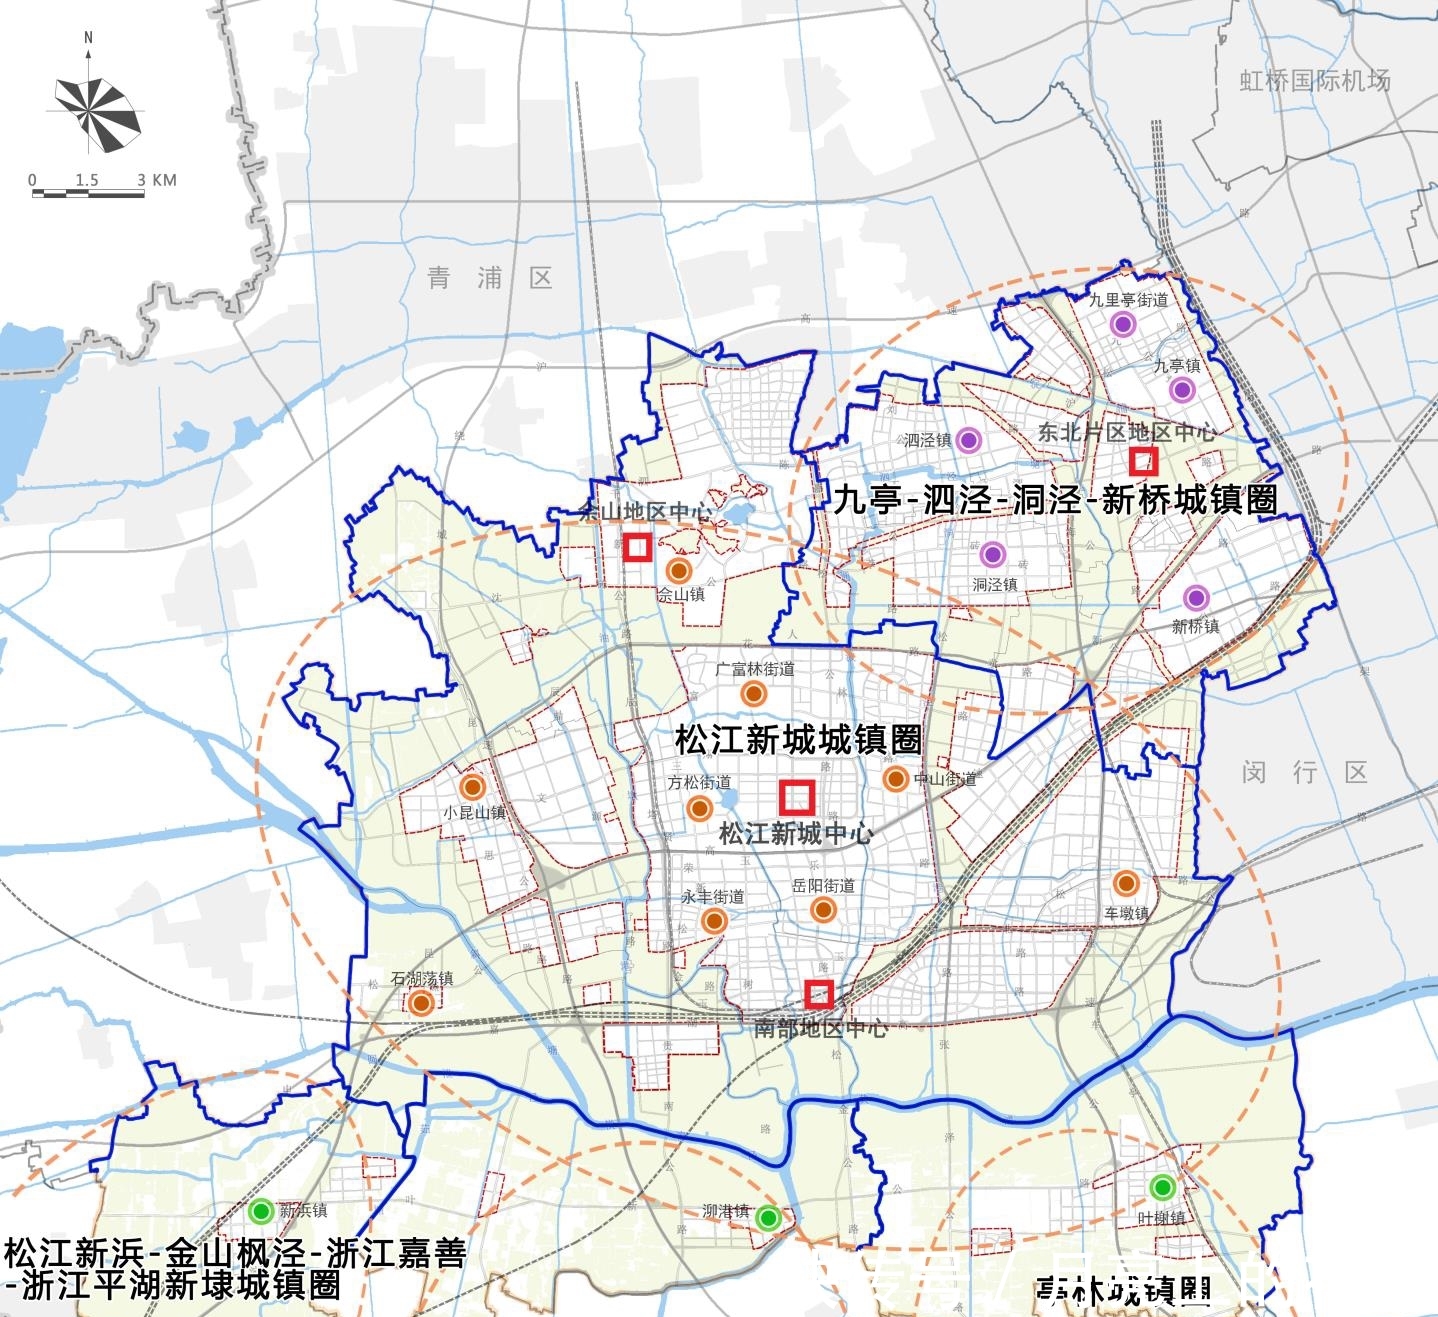 解析上海市轨道交通三期规划:松江区项目为零